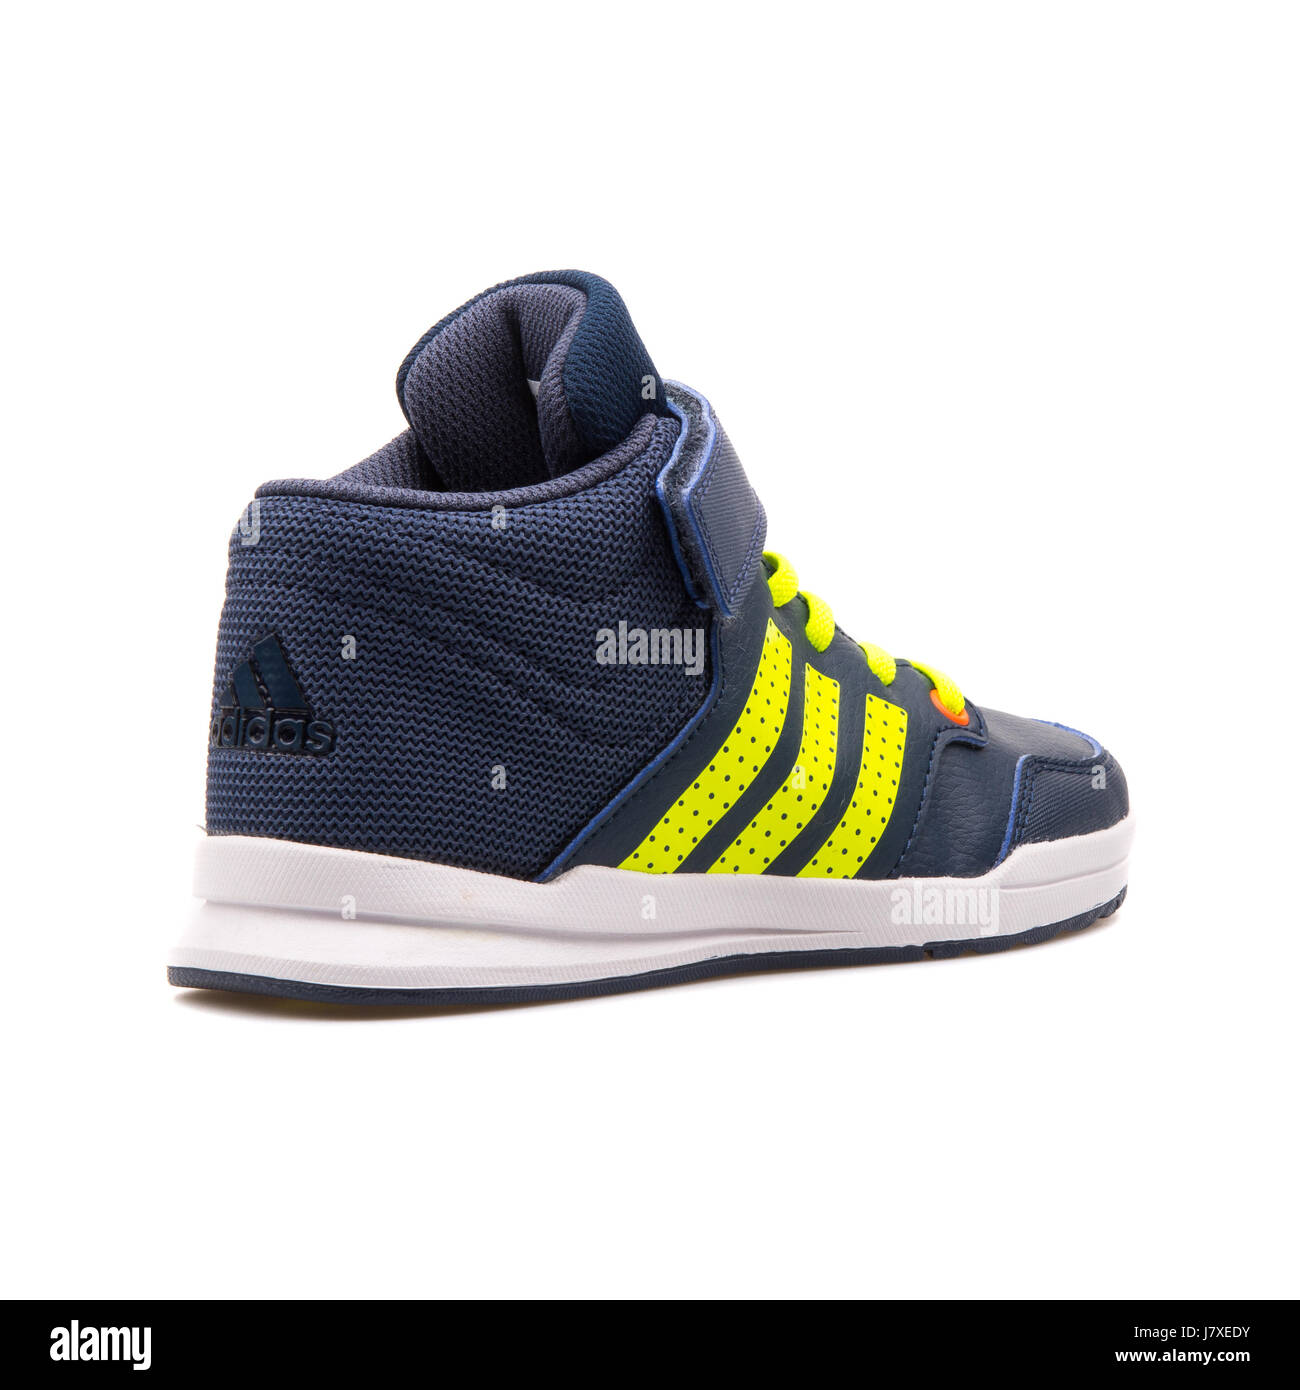 Adidas Jan BS 2 milieu C Kids Sneakers Bleu - B23907 Photo Stock - Alamy